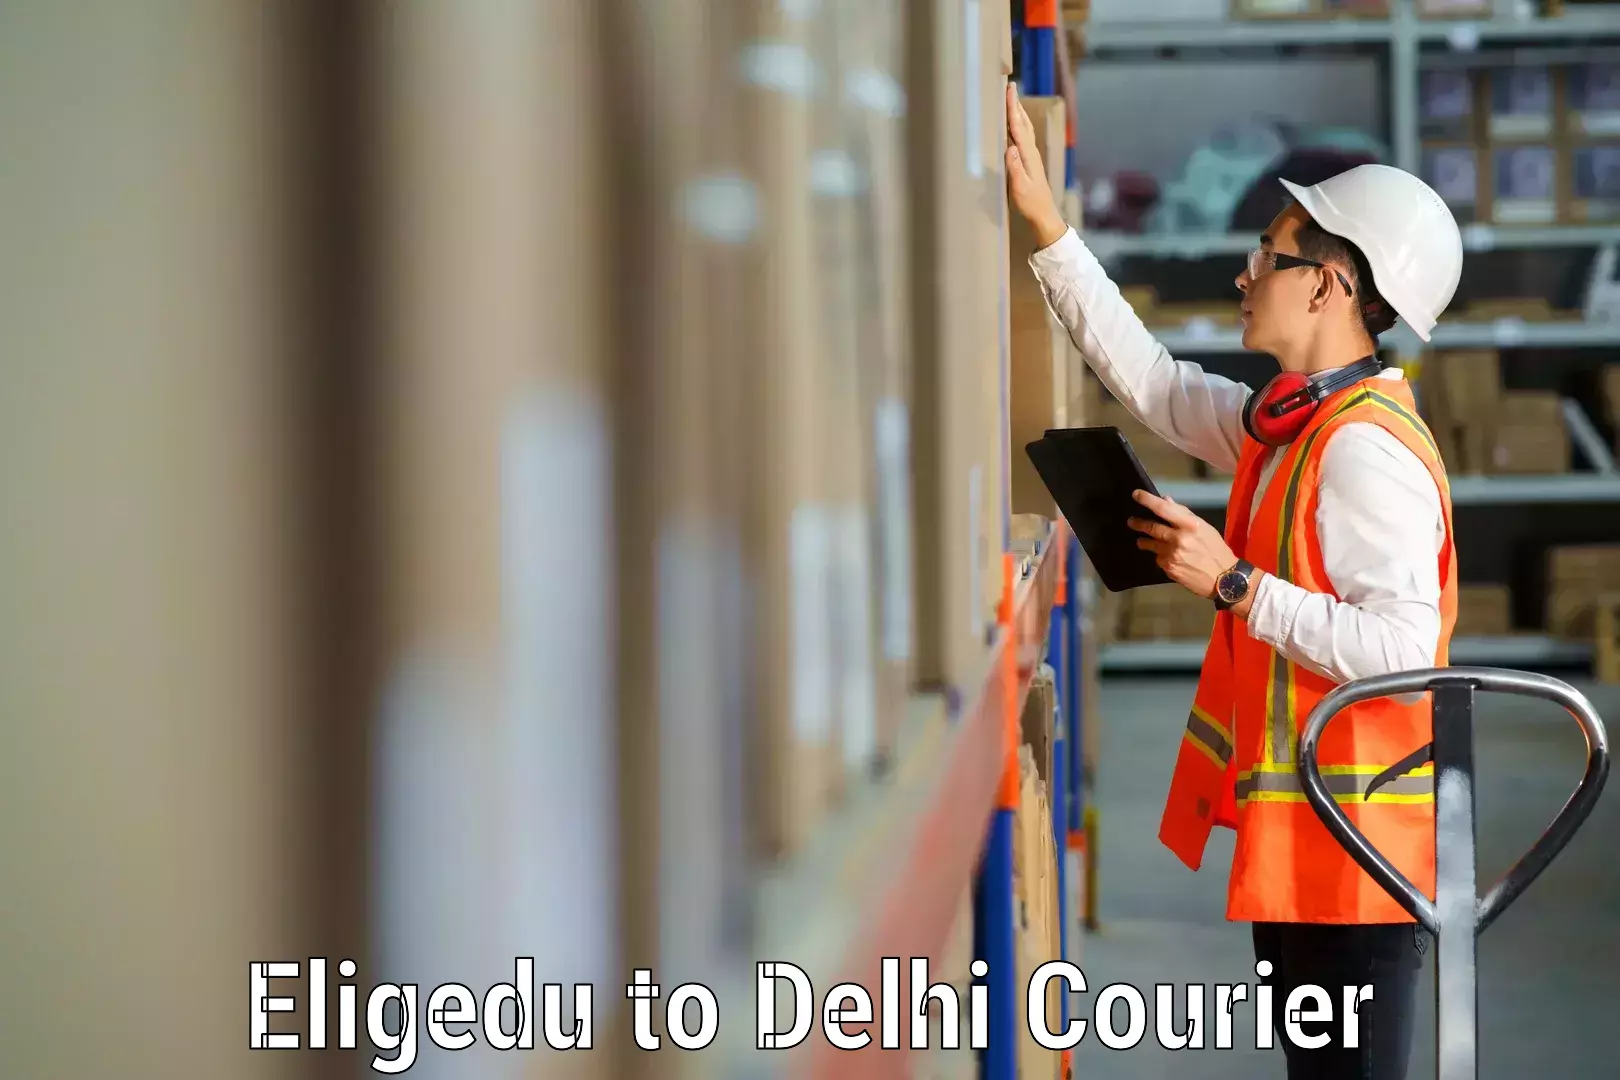 Furniture transport solutions Eligedu to East Delhi